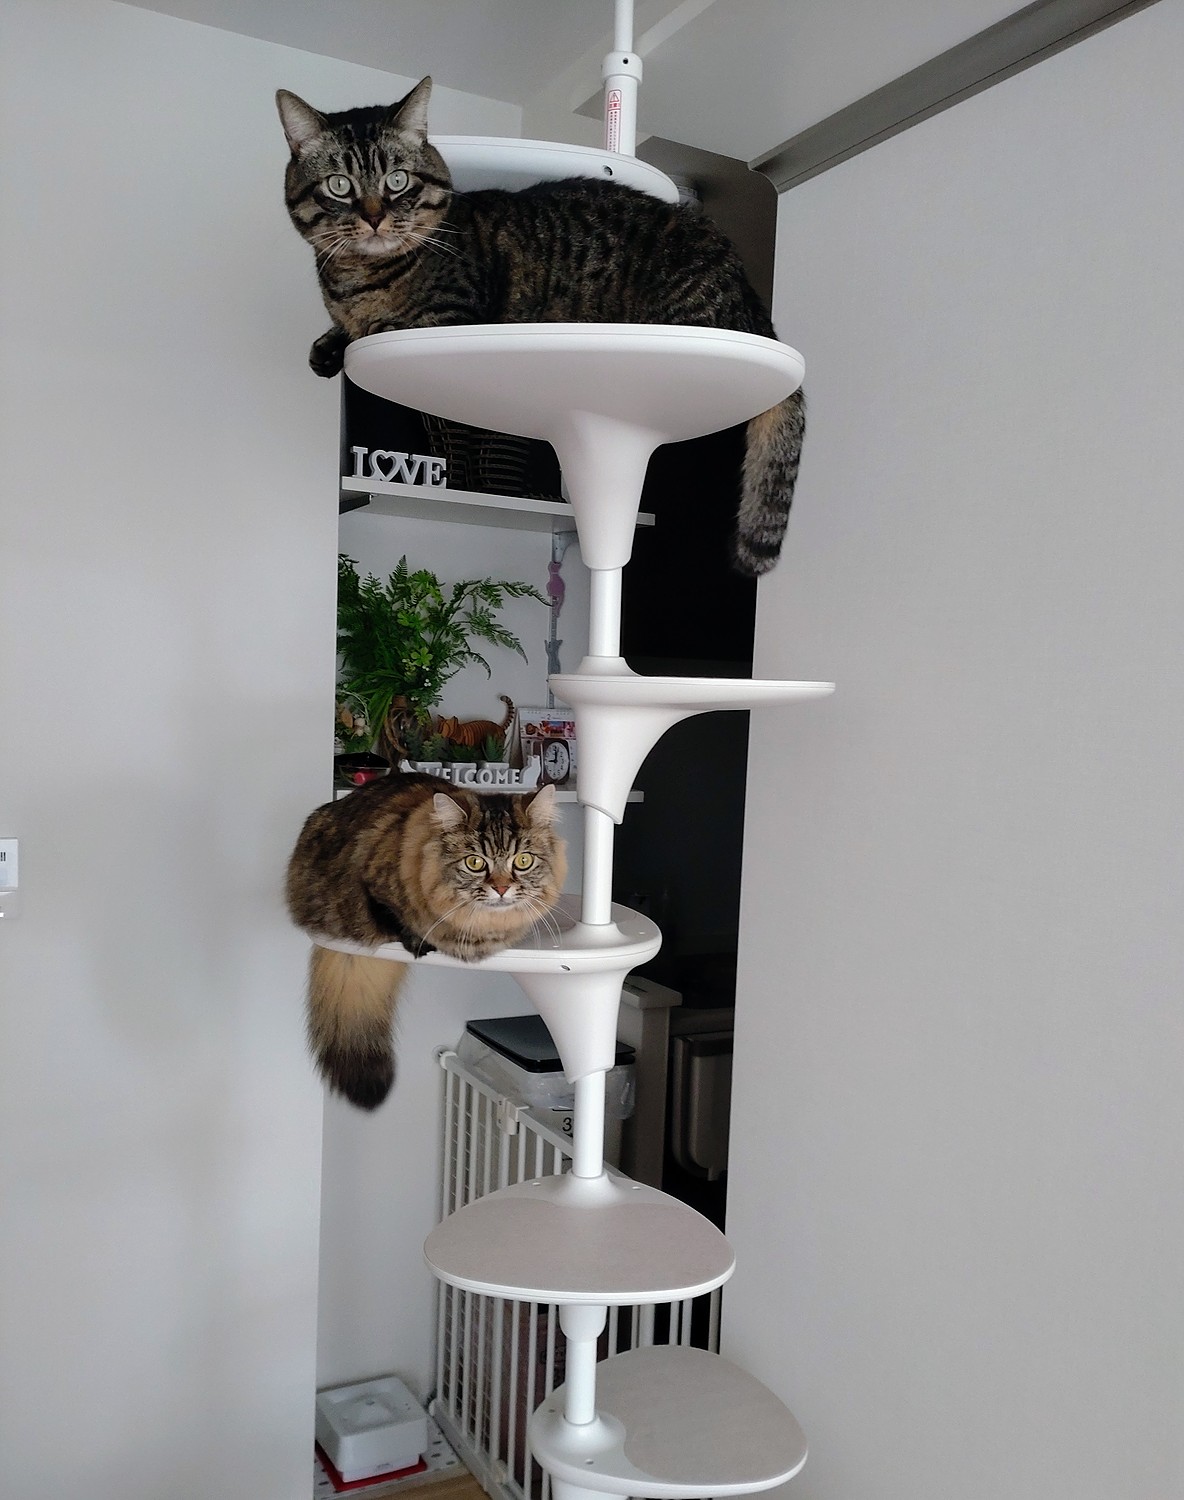 OPPO キャットフォレスト キャットタワー - 猫用品